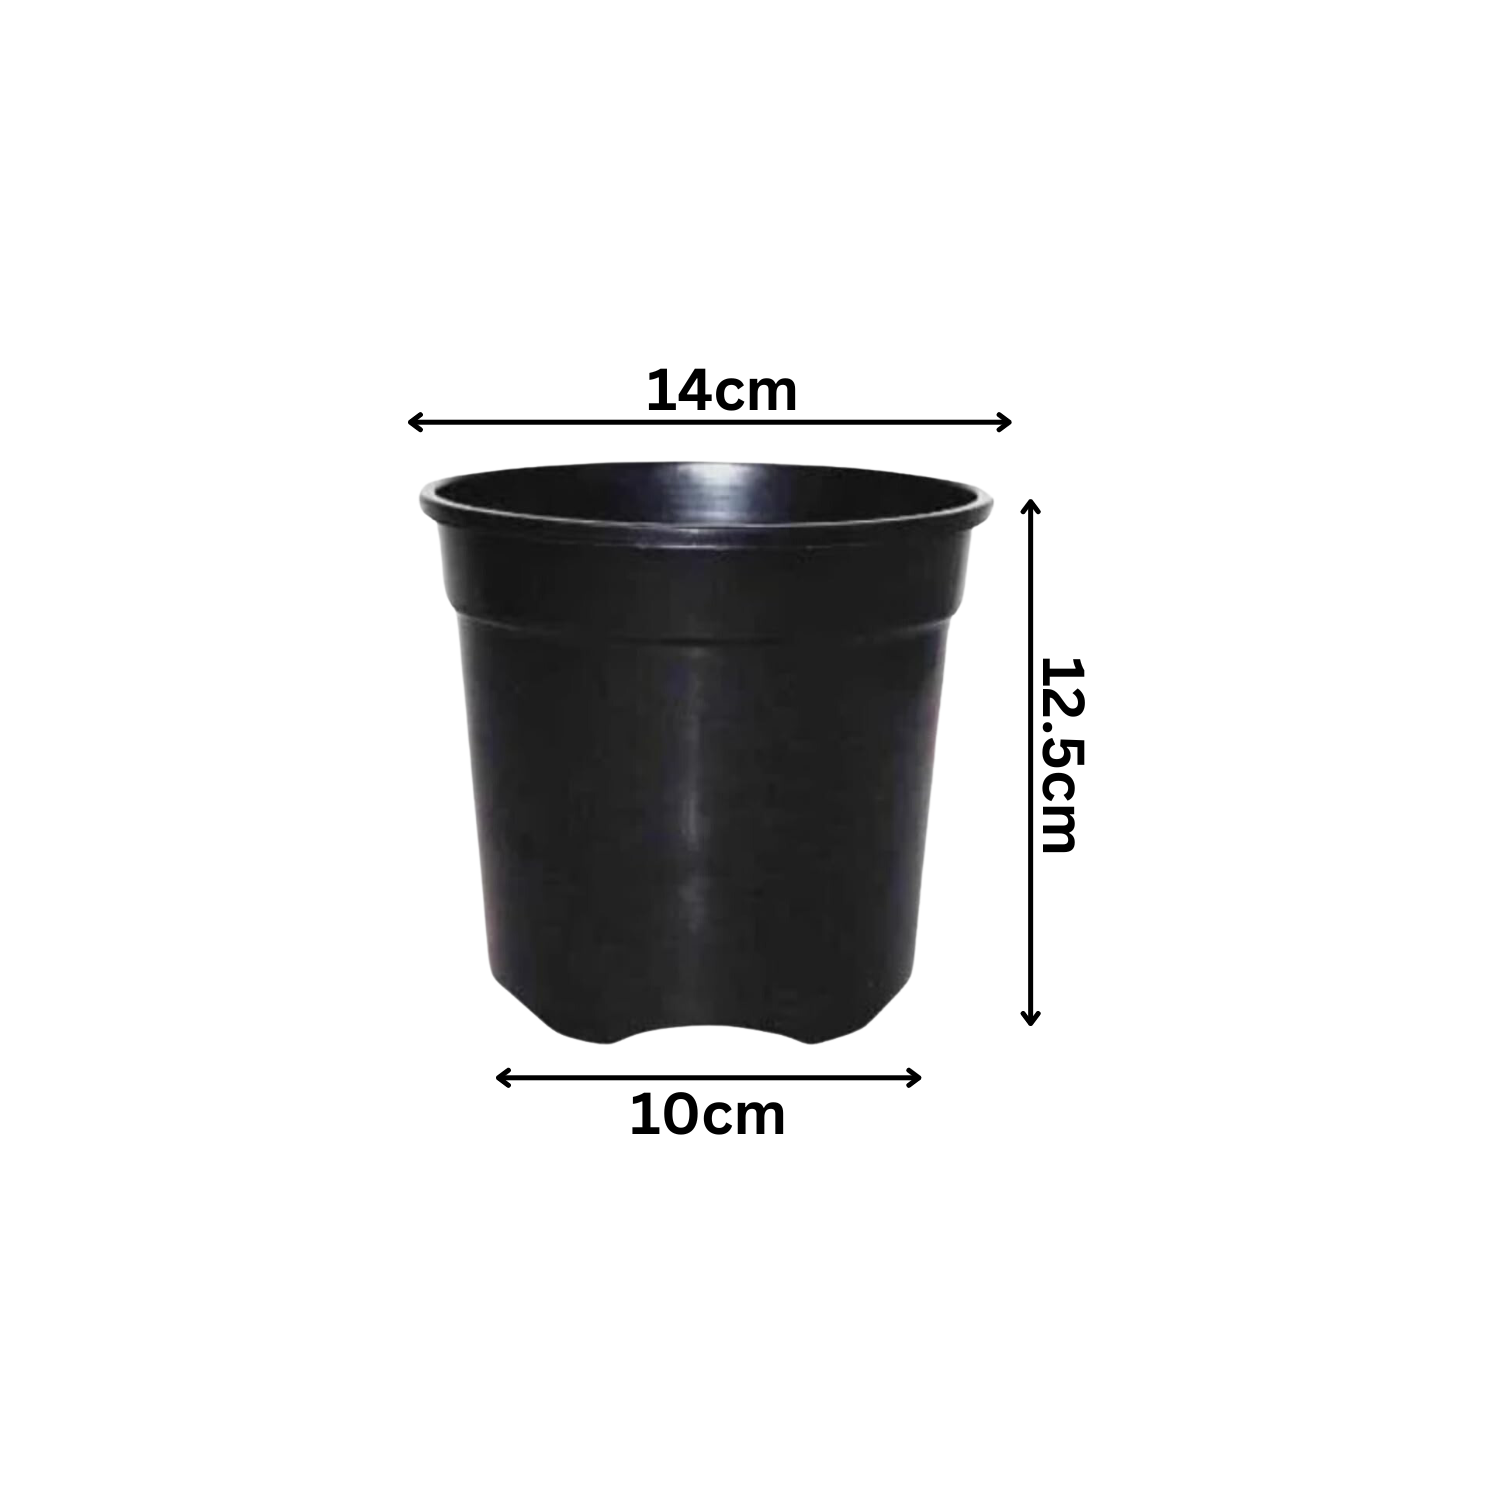 5 Inch Gro Pro Black Plastic Pot for Home & Garden